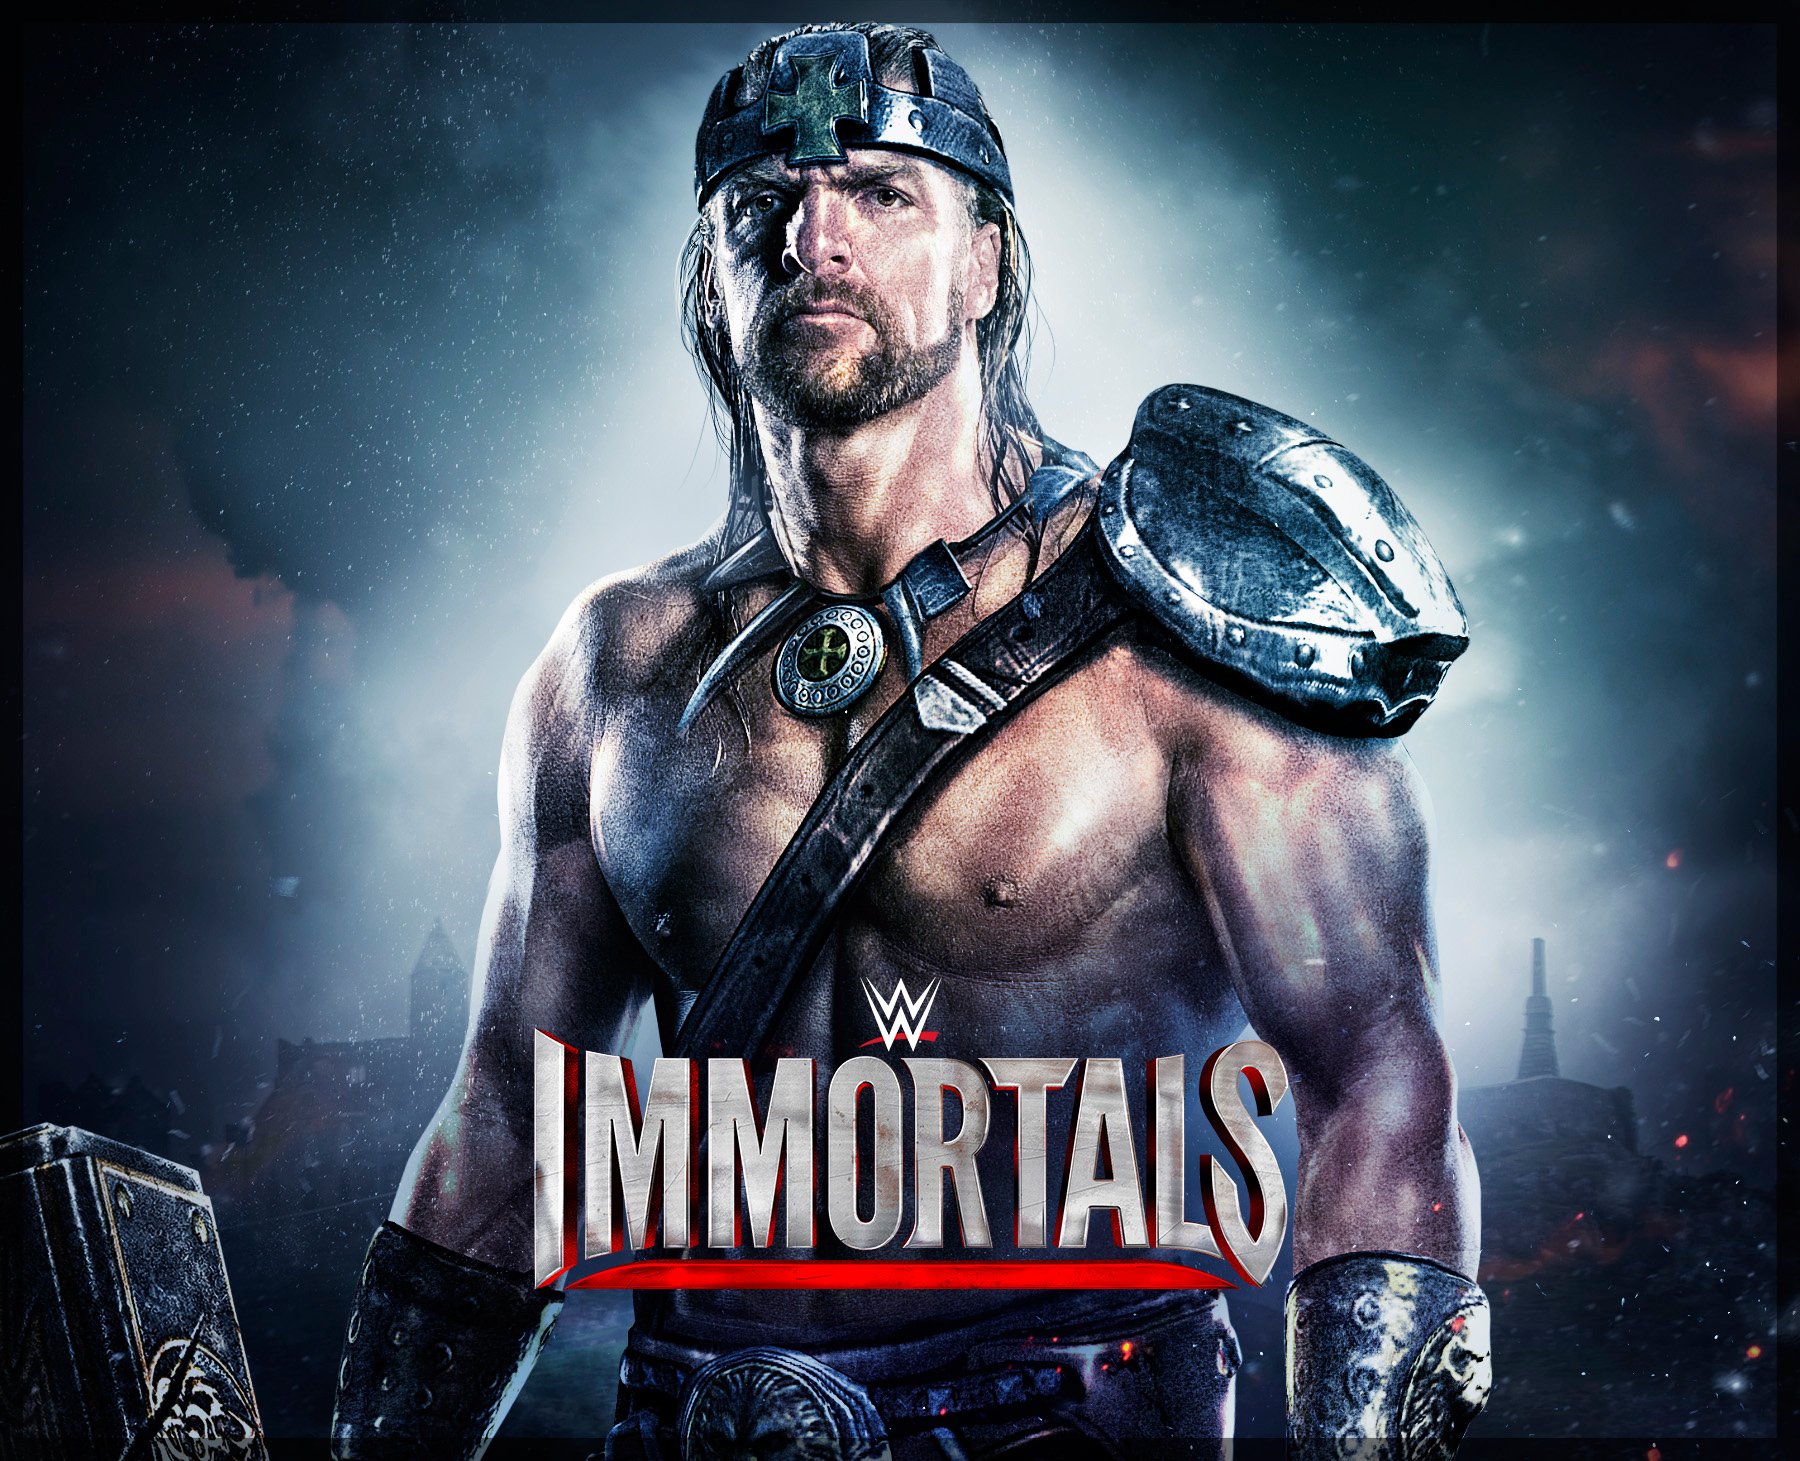 immortals movie online free download